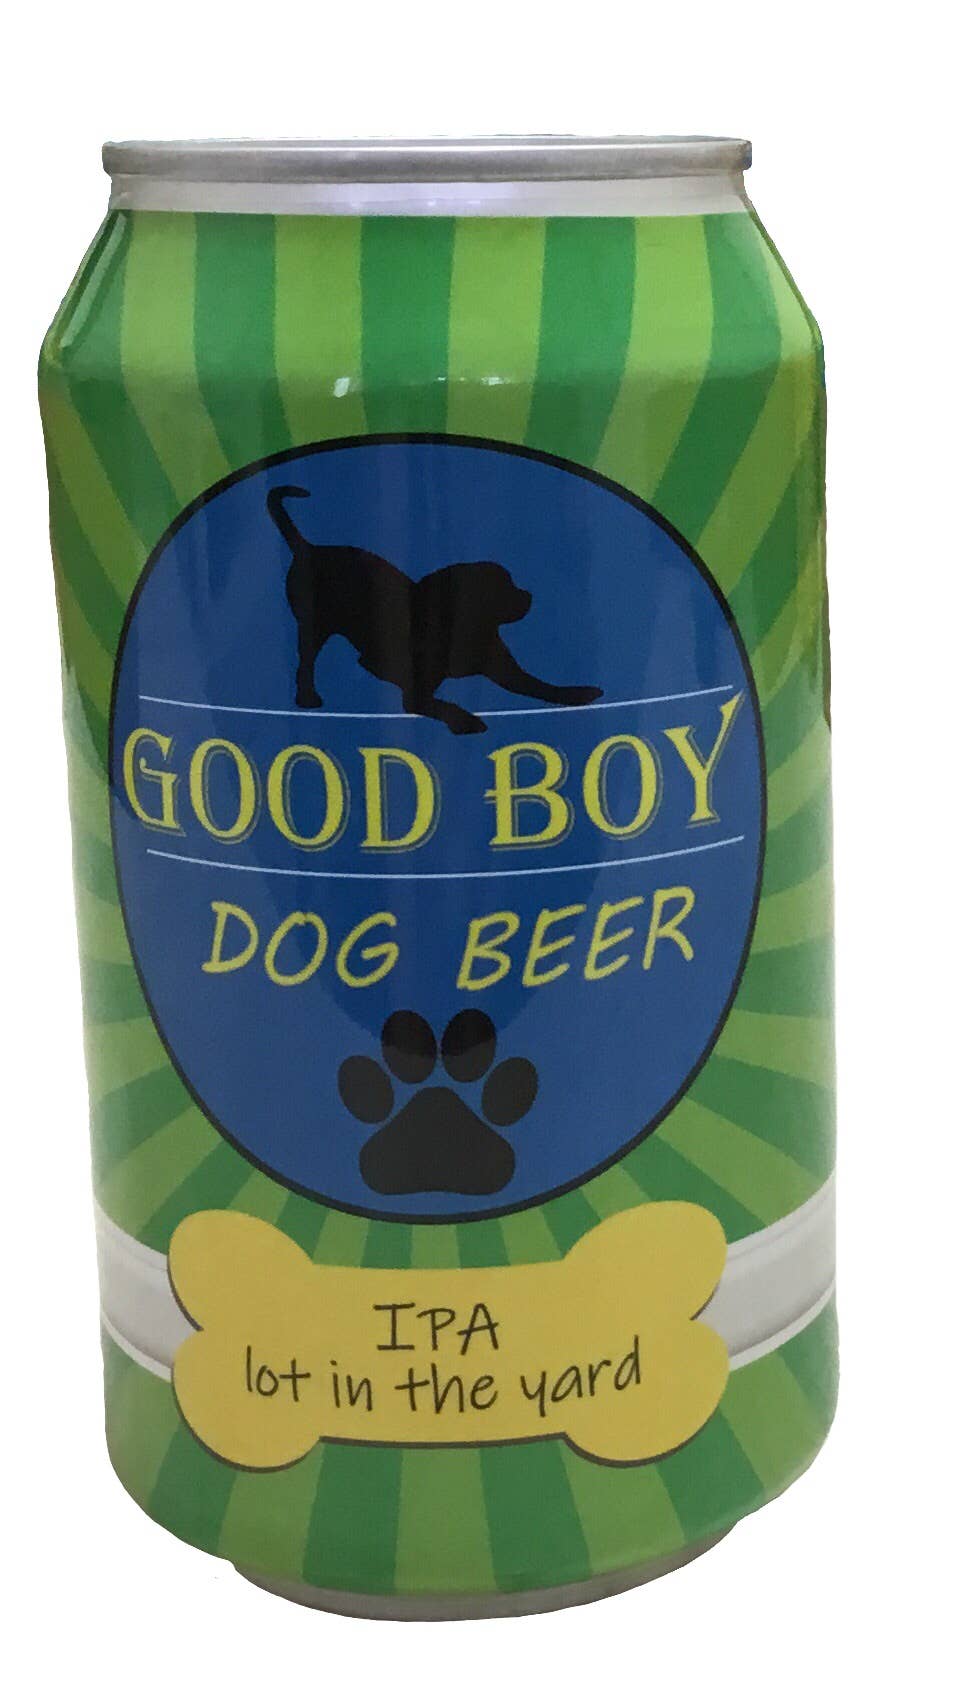 Good Boy Dog Beer IPA Lot in the Yard